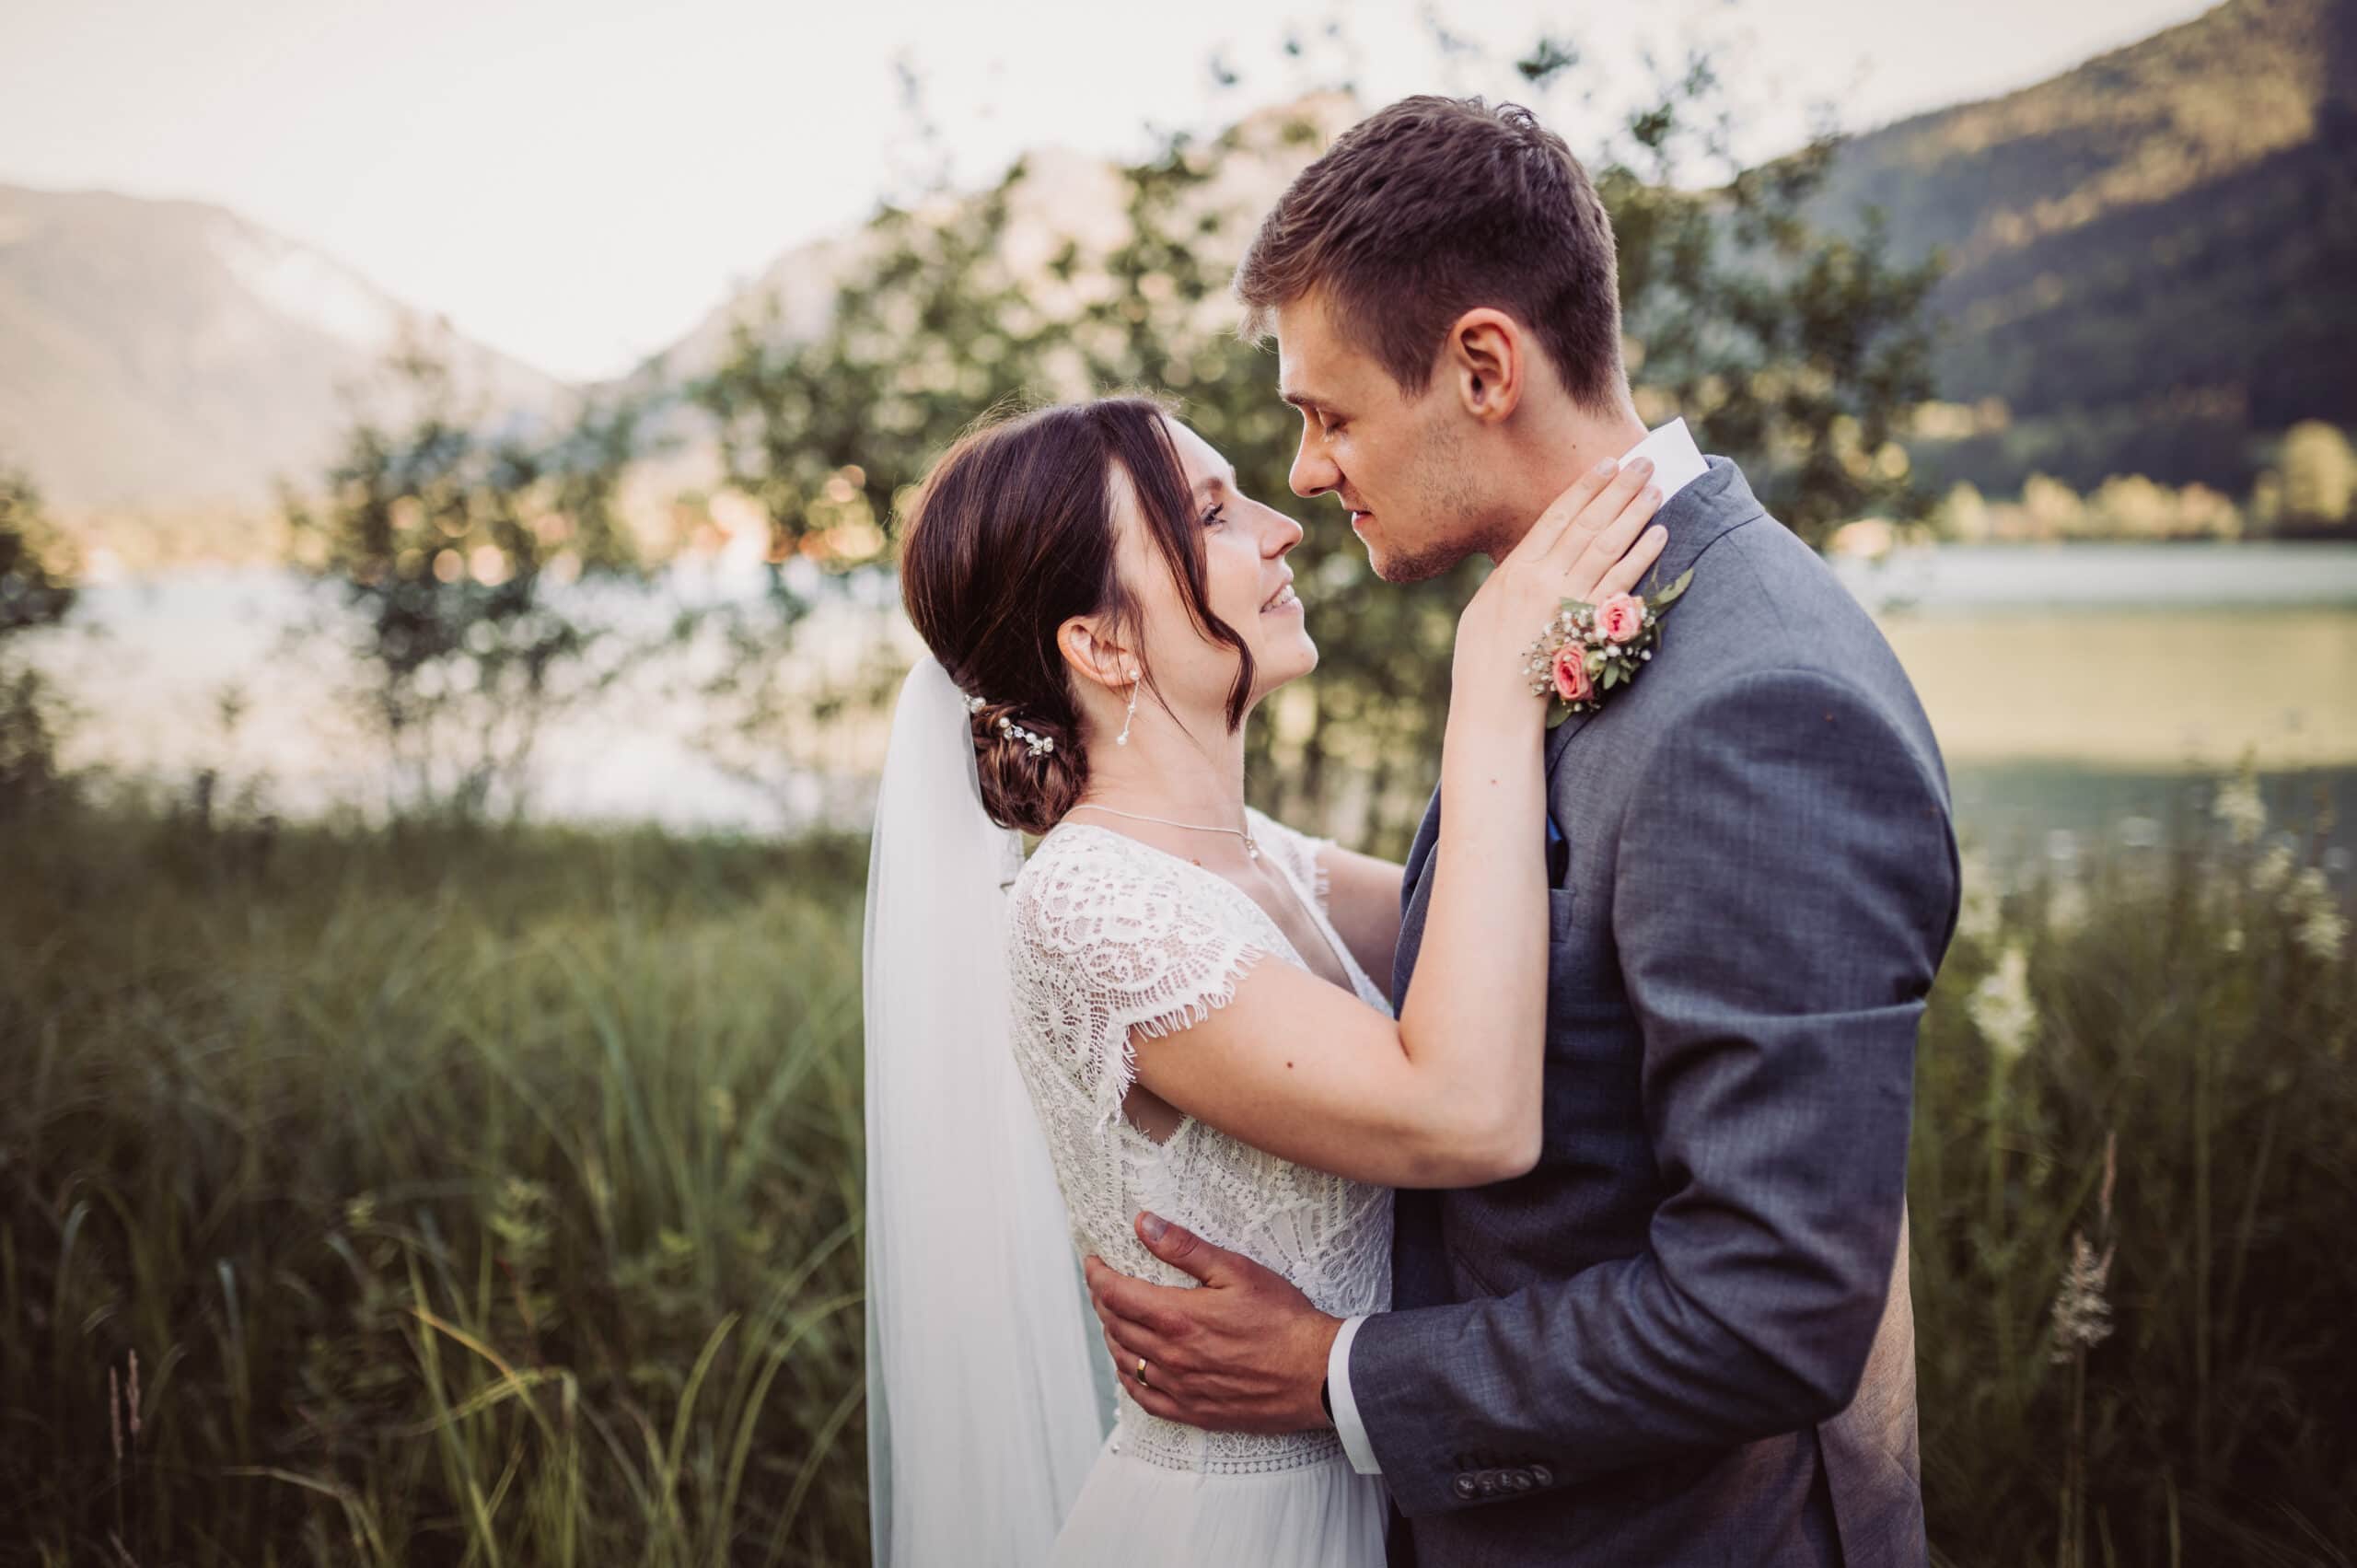 Das Hochzeitsshooting in Oberbayern am Schliersee. Das Brautpaar steht auf der Insel und ist kurz vo einem Kuss.